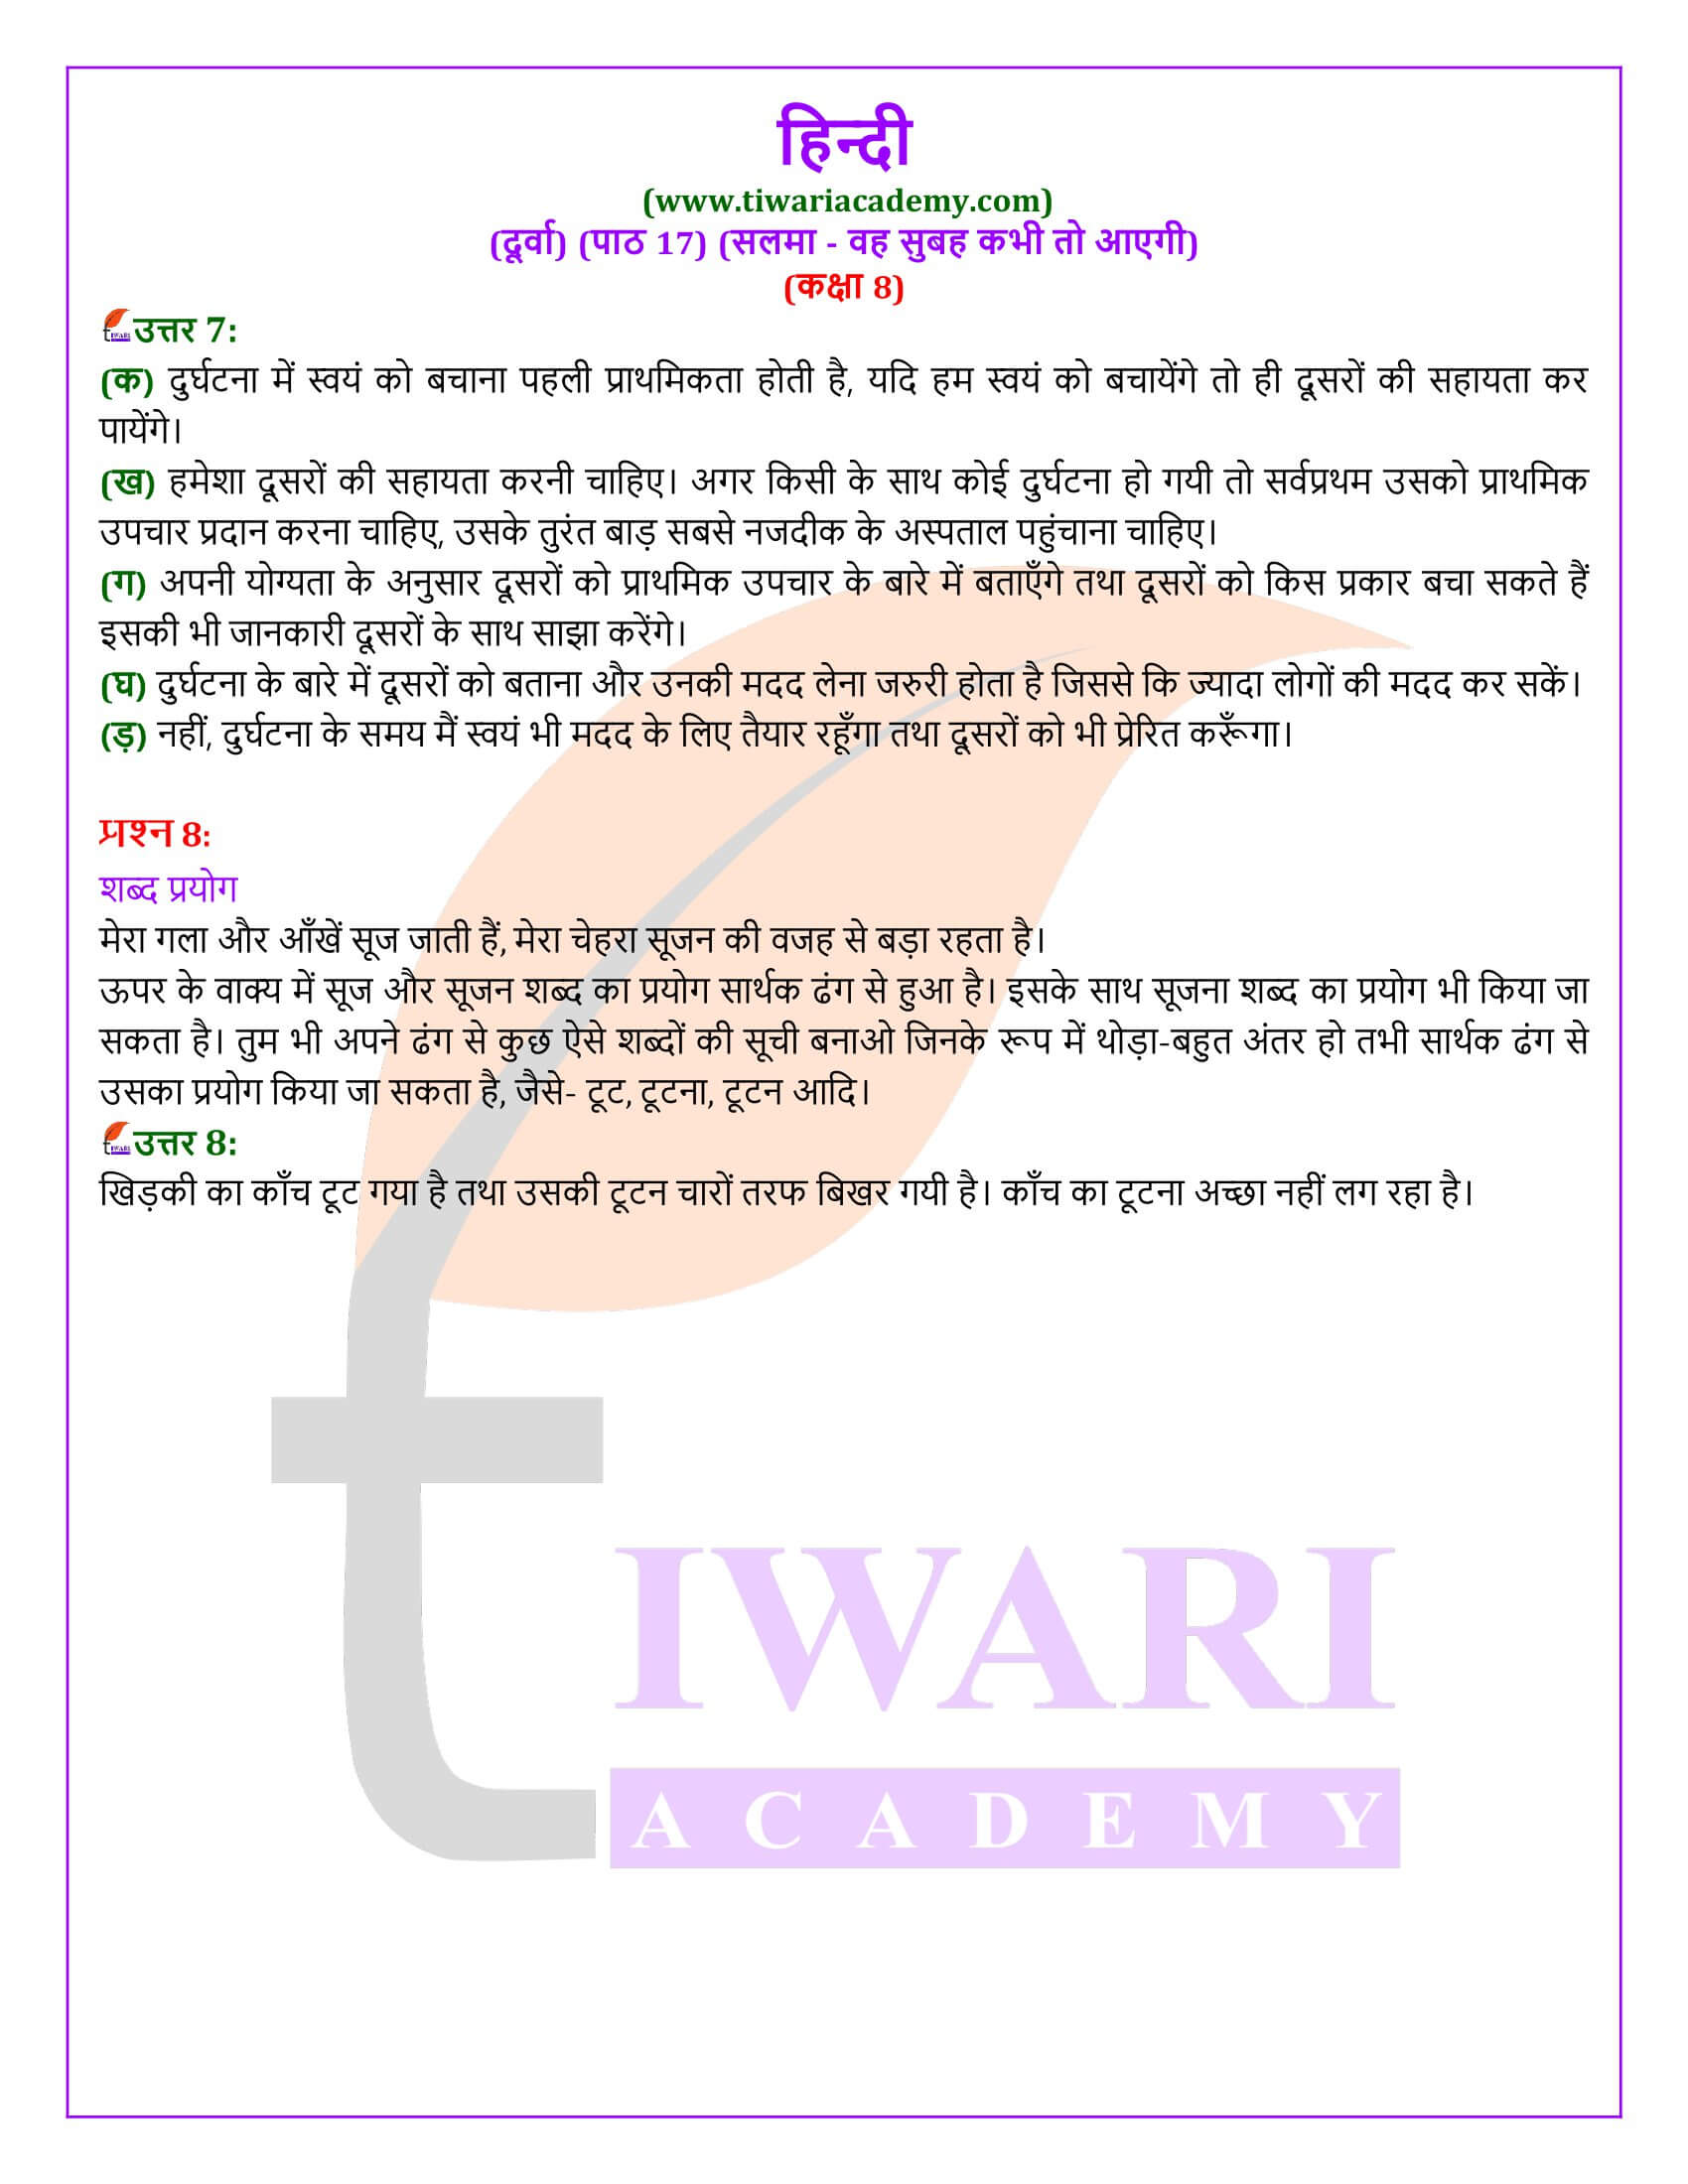 कक्षा 8 हिंदी दूर्वा अध्याय 17 के लिए सवाल जवाब